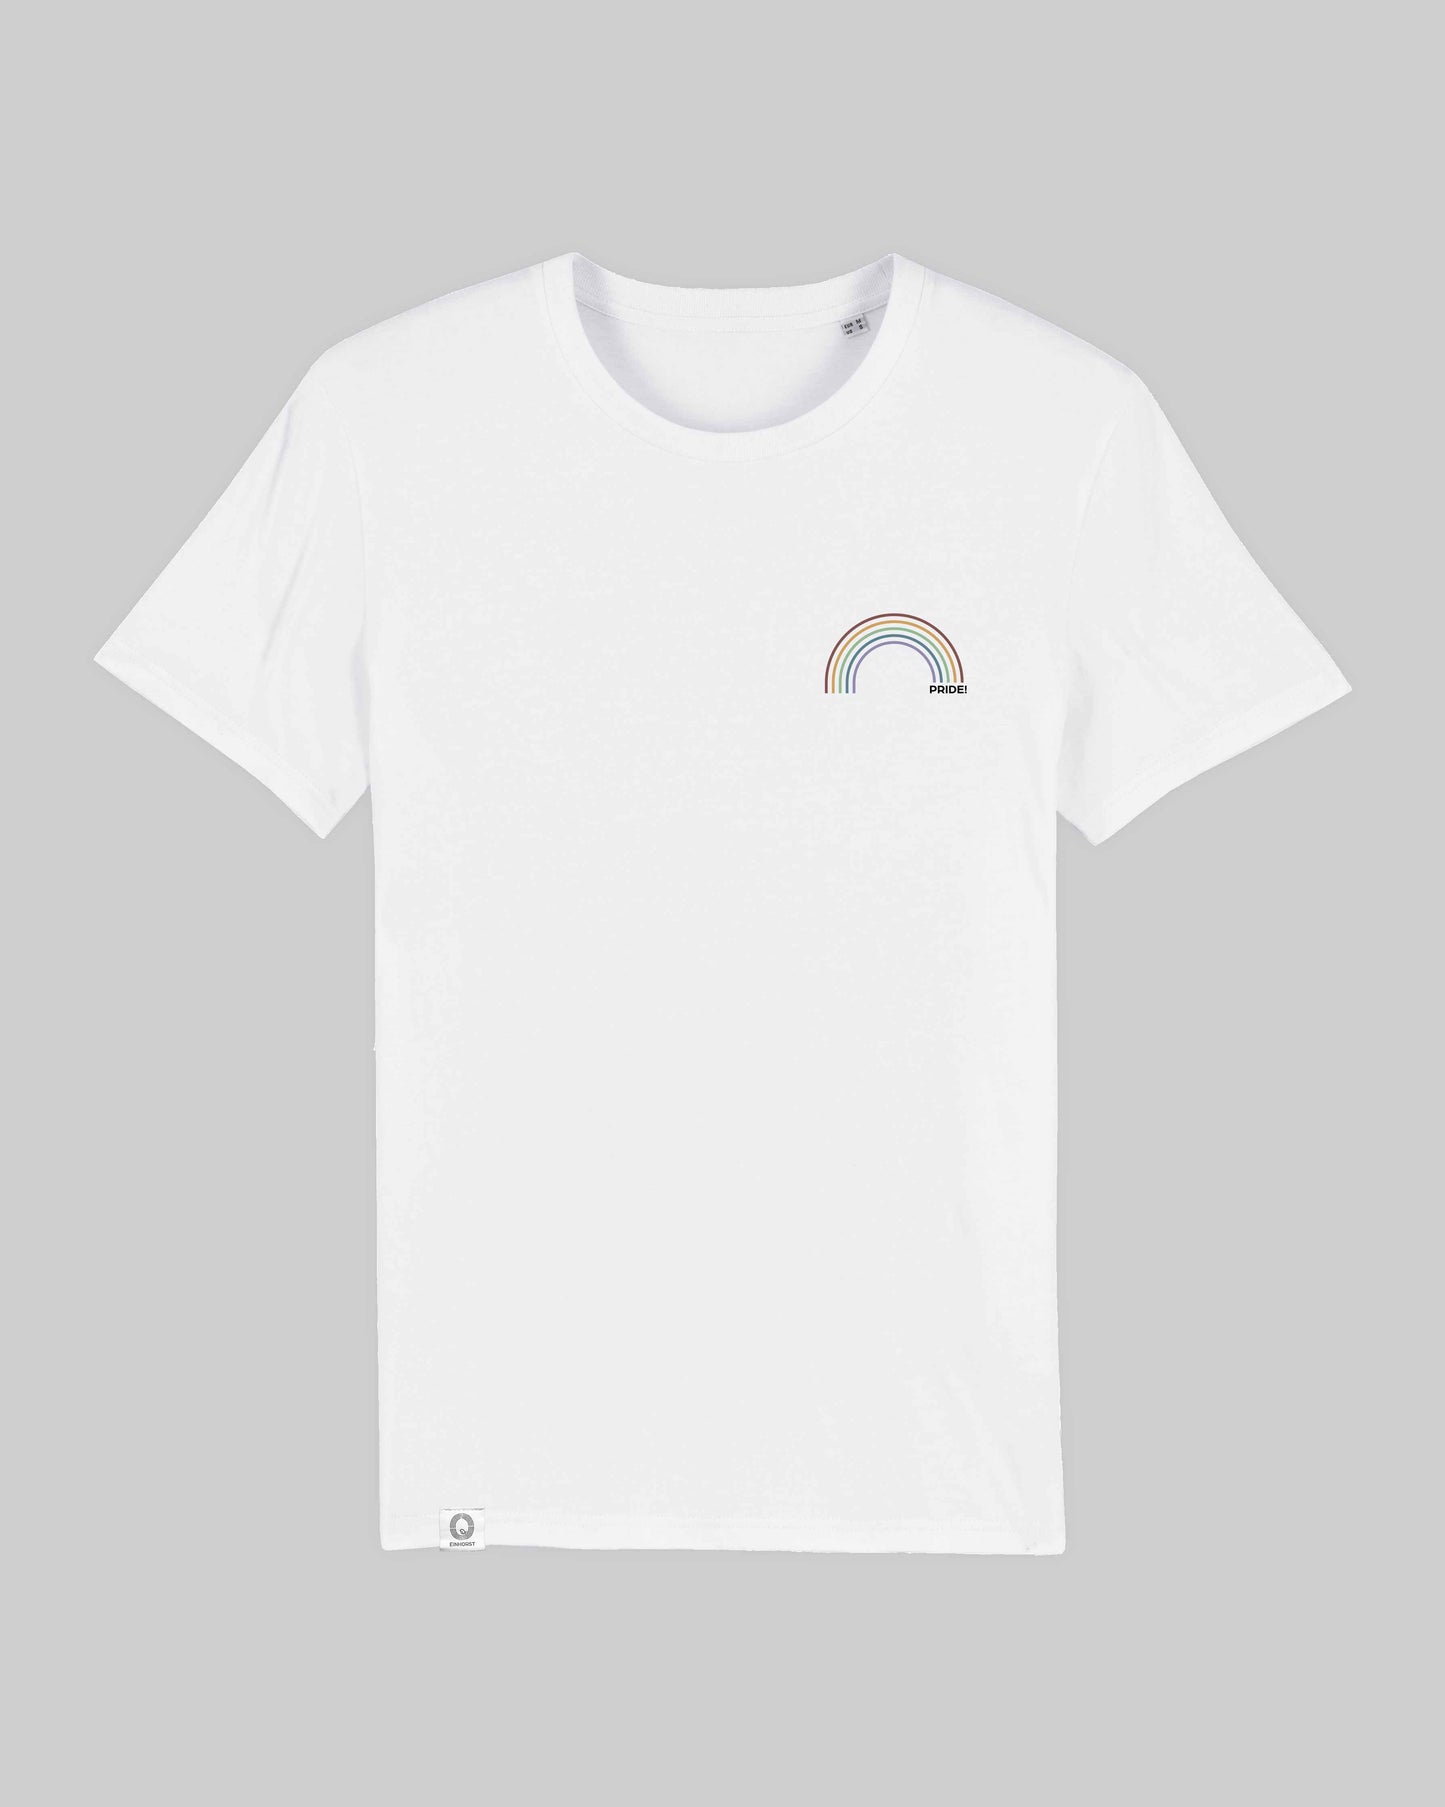 EINHORST® unisex Organic Shirt in Weiß mit dem Motiv "pride Regenbogen" in der Kombination bunter Regenbogen mit schwarzer Schrift, Bild von Shirt von vorne